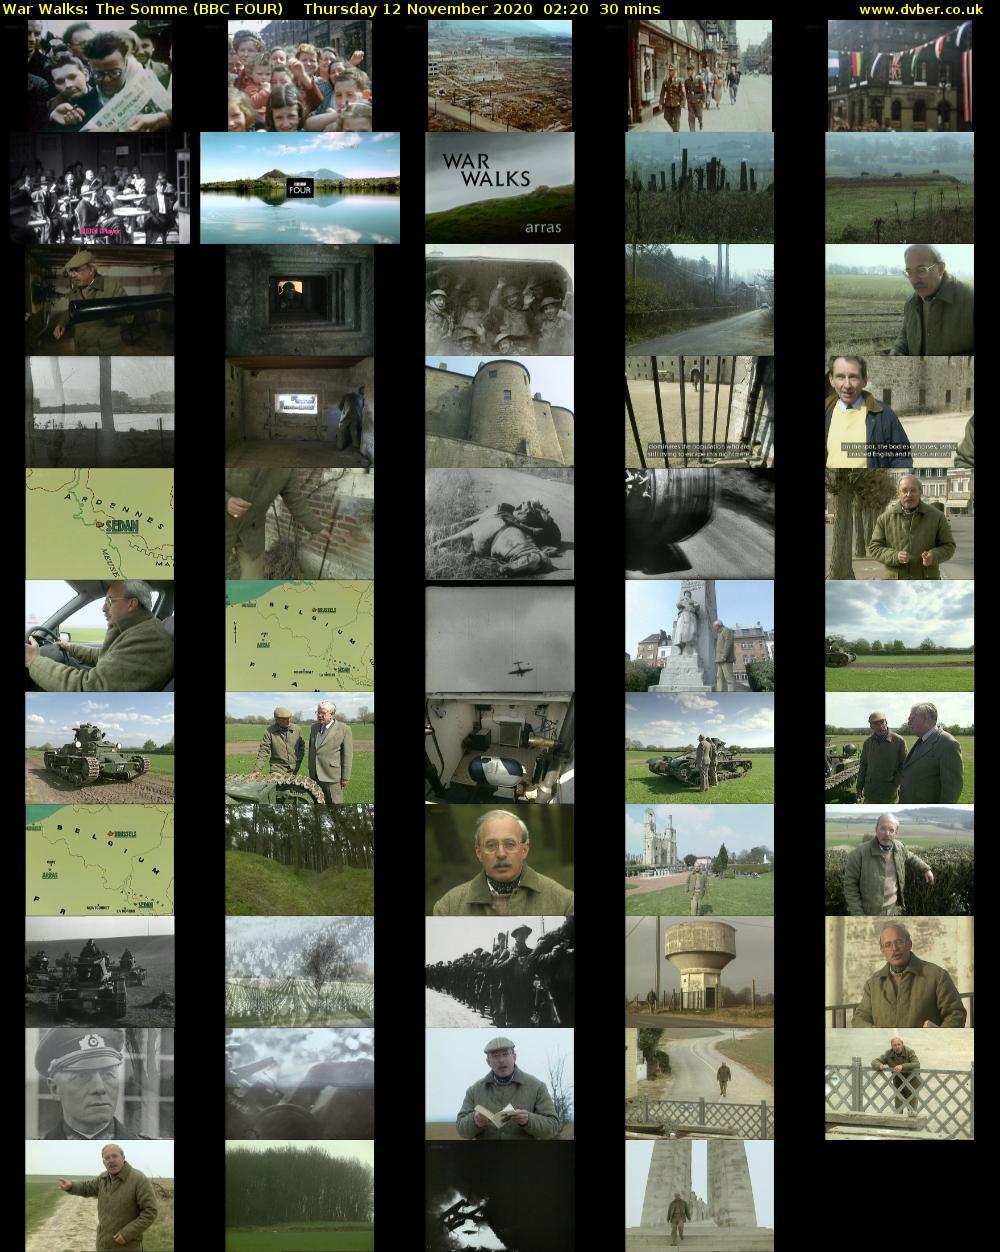 War Walks: The Somme (BBC FOUR) Thursday 12 November 2020 02:20 - 02:50